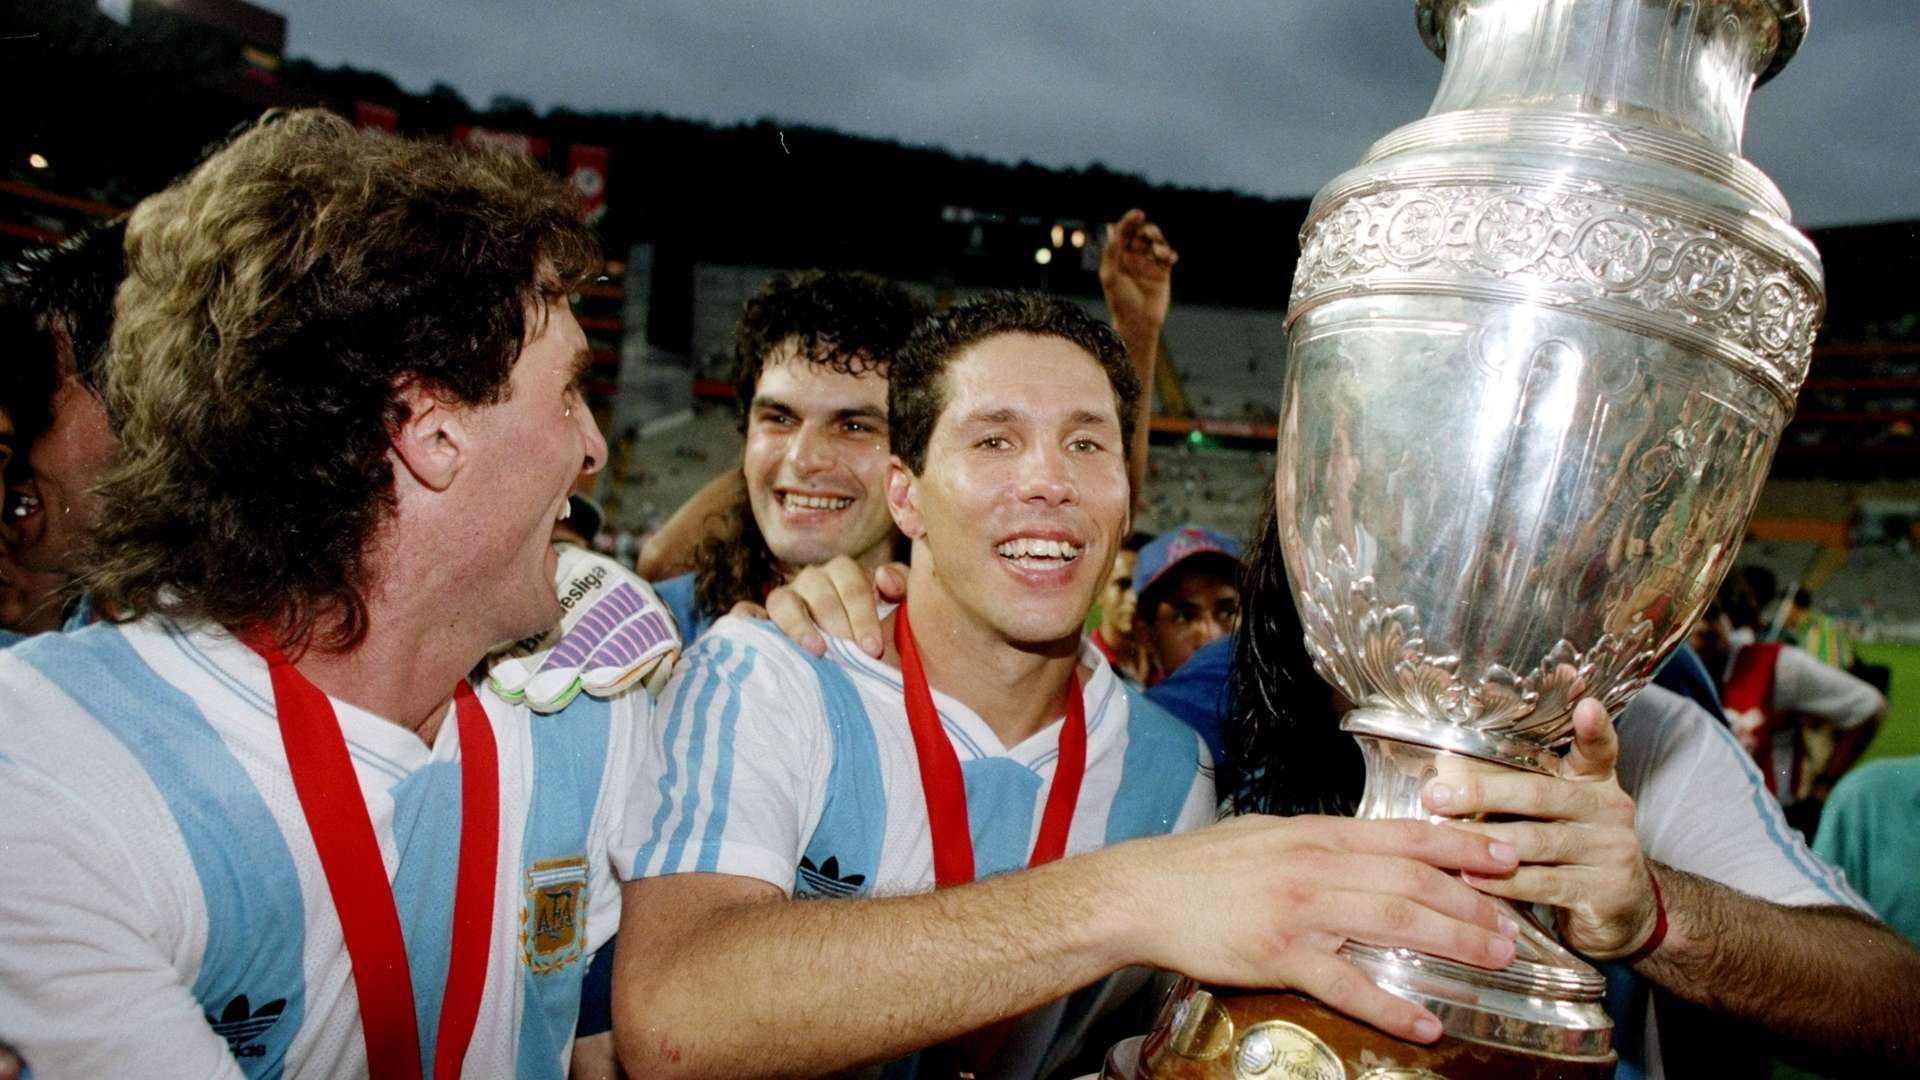 Especial Copa América 100 años (simeone argentina 1993